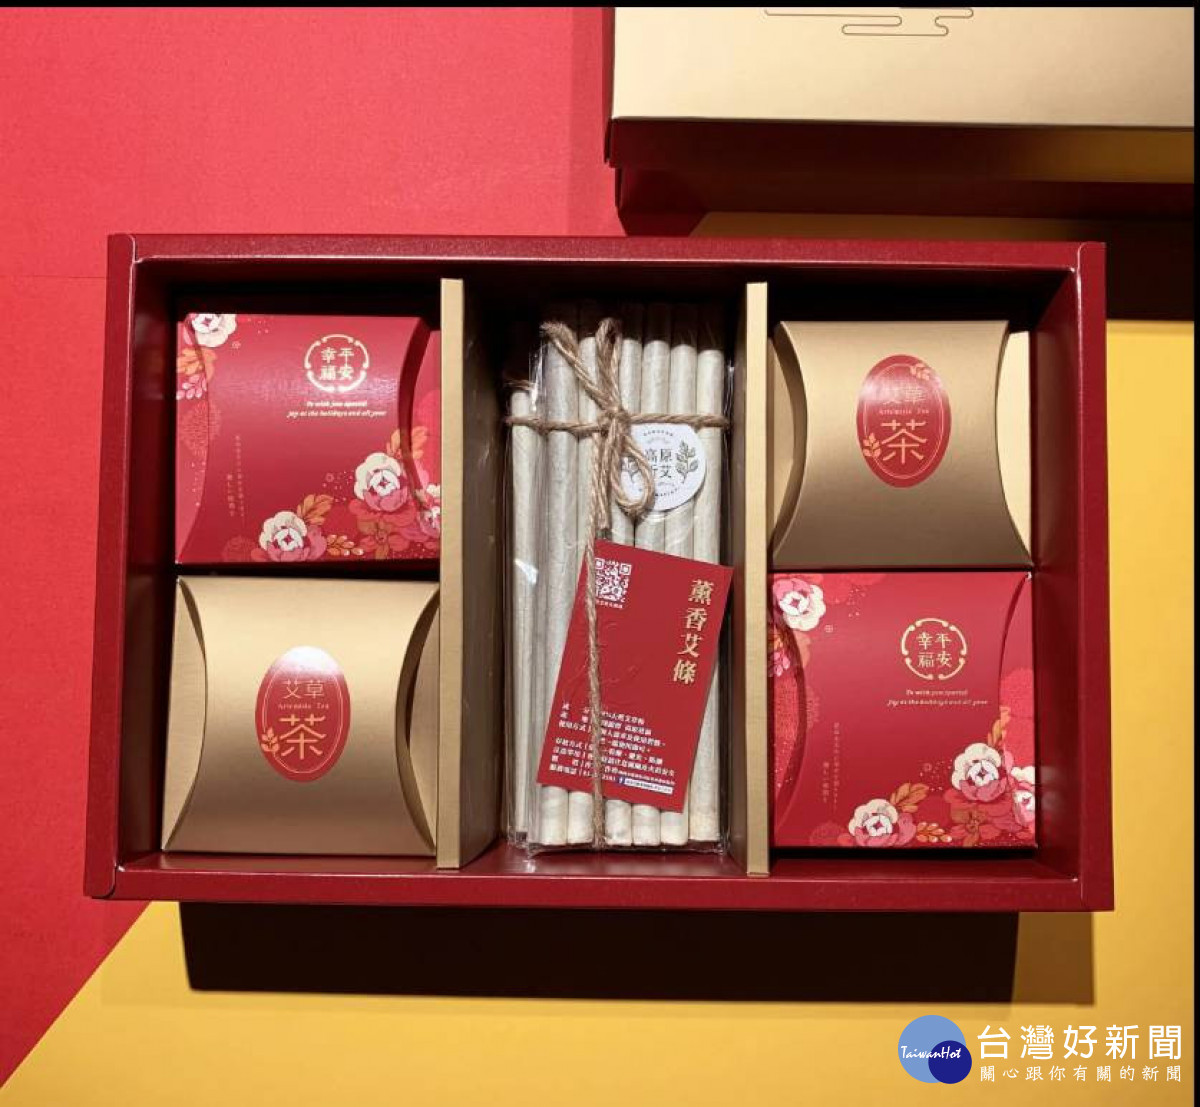 桃園市龍潭區高原社區發展協會推出「祈艾幸福平安禮盒」。